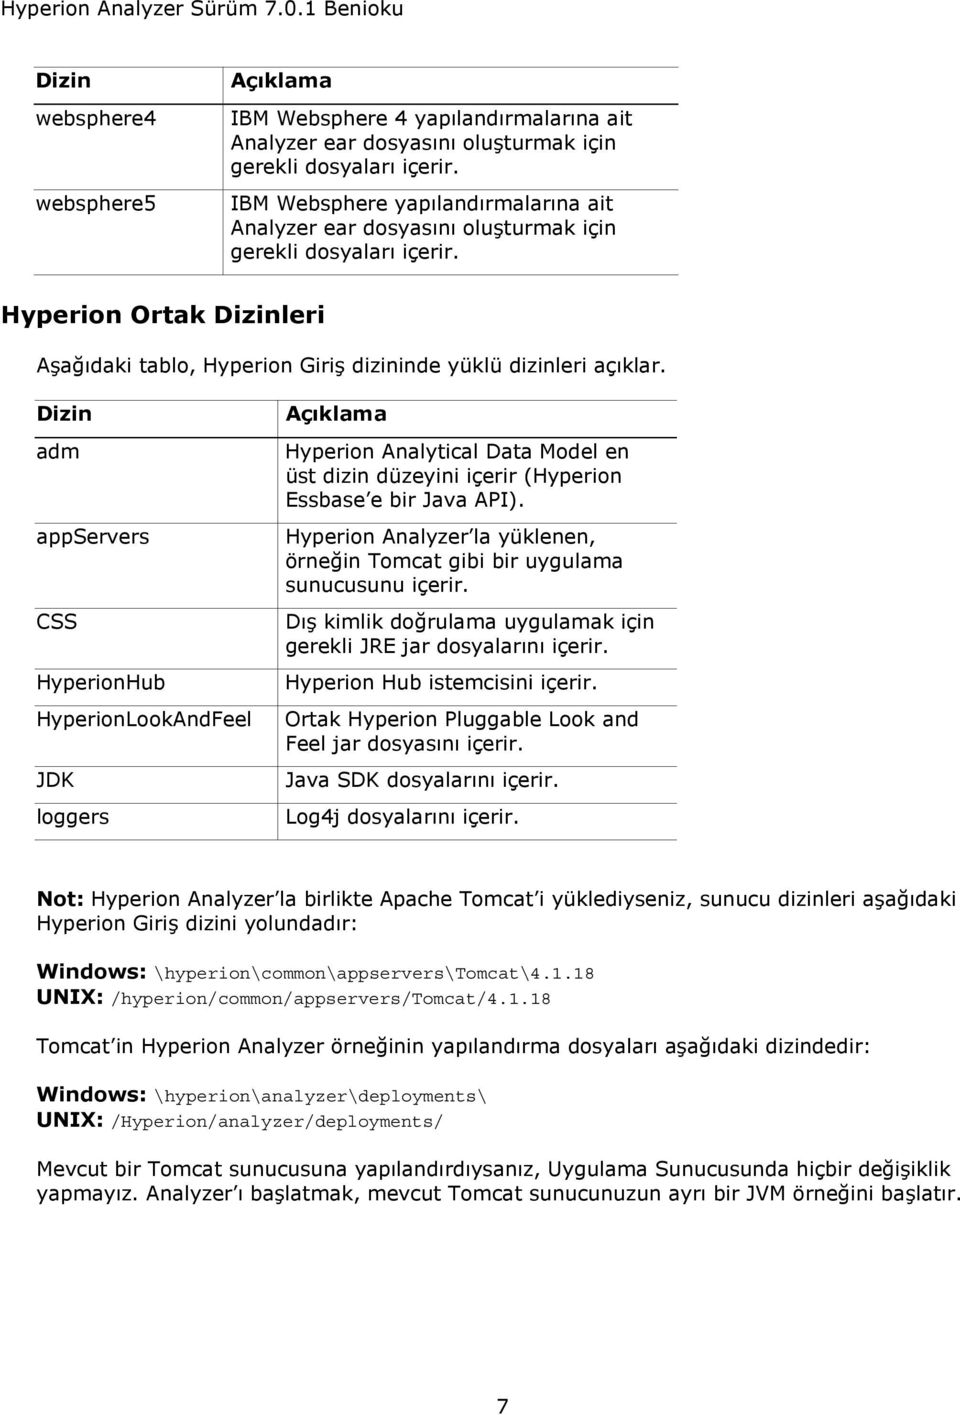 Dizin adm appservers CSS HyperionHub HyperionLookAndFeel JDK loggers Açıklama Hyperion Analytical Data Model en üst dizin düzeyini içerir (Hyperion Essbase e bir Java API).